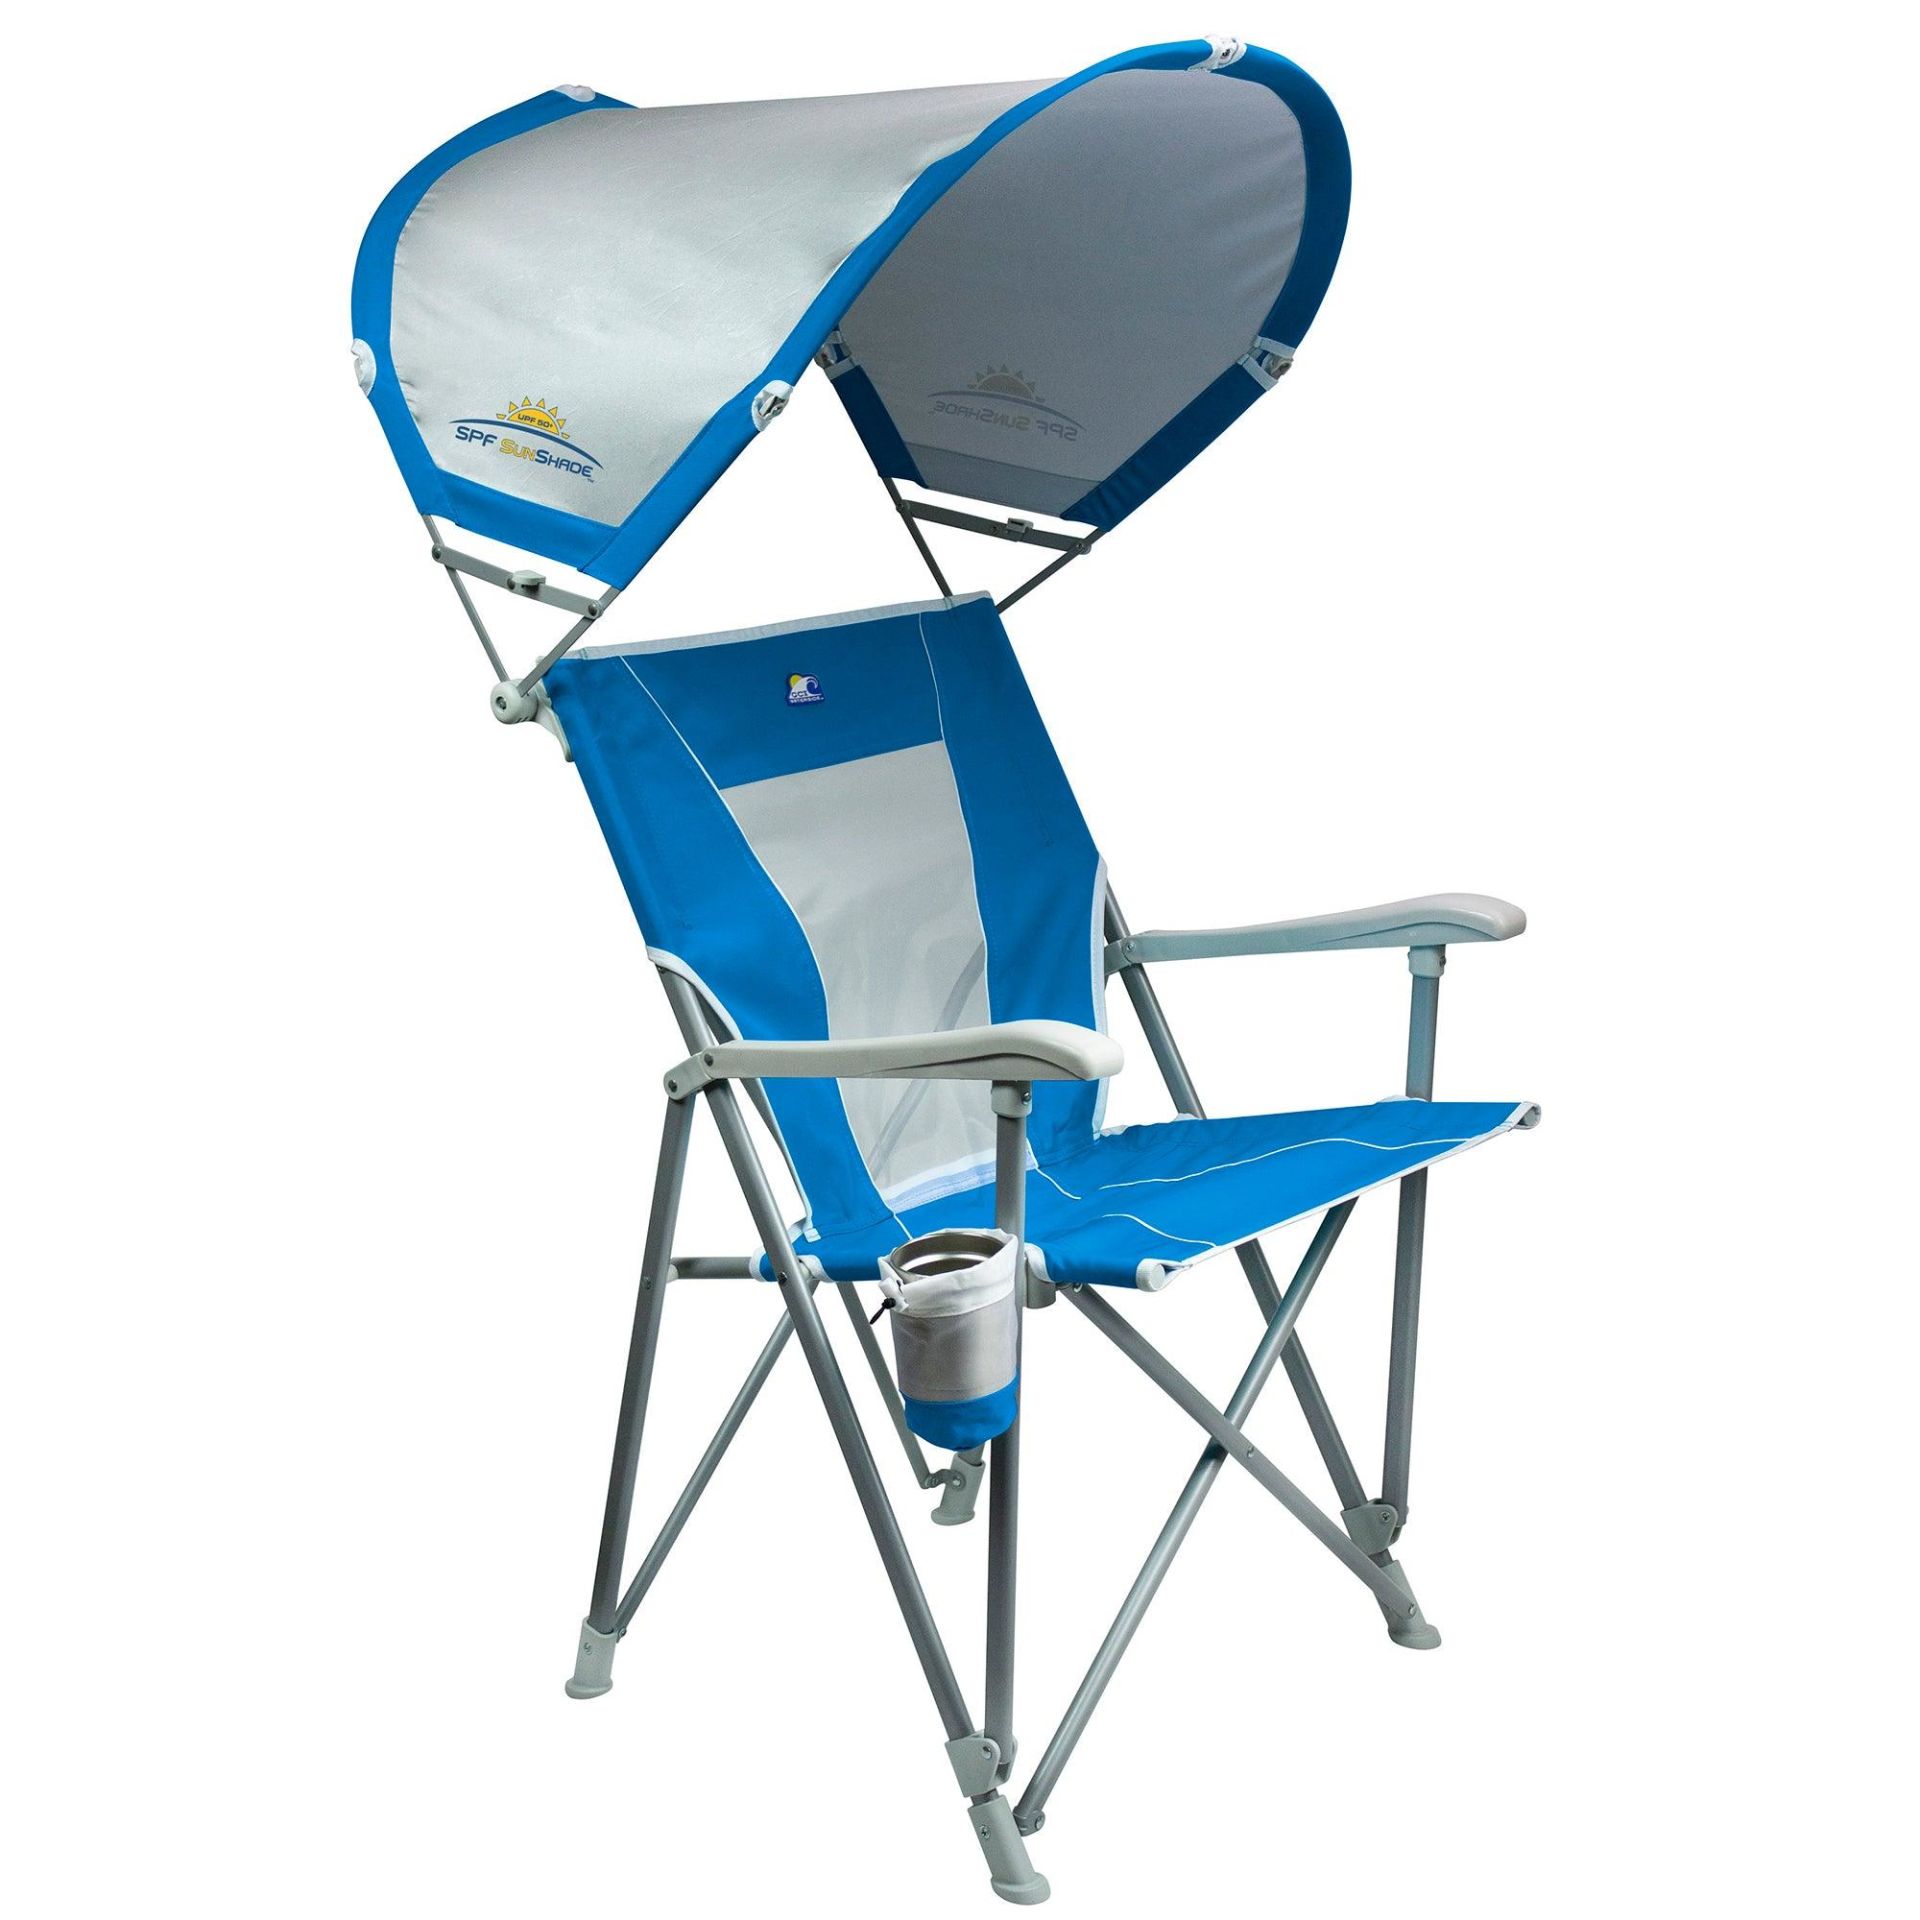 Gci Outdoor SunShade Captain's Şemsiyeli Gölgelikli Kamp ve Plaj Sandalyesi Mavi